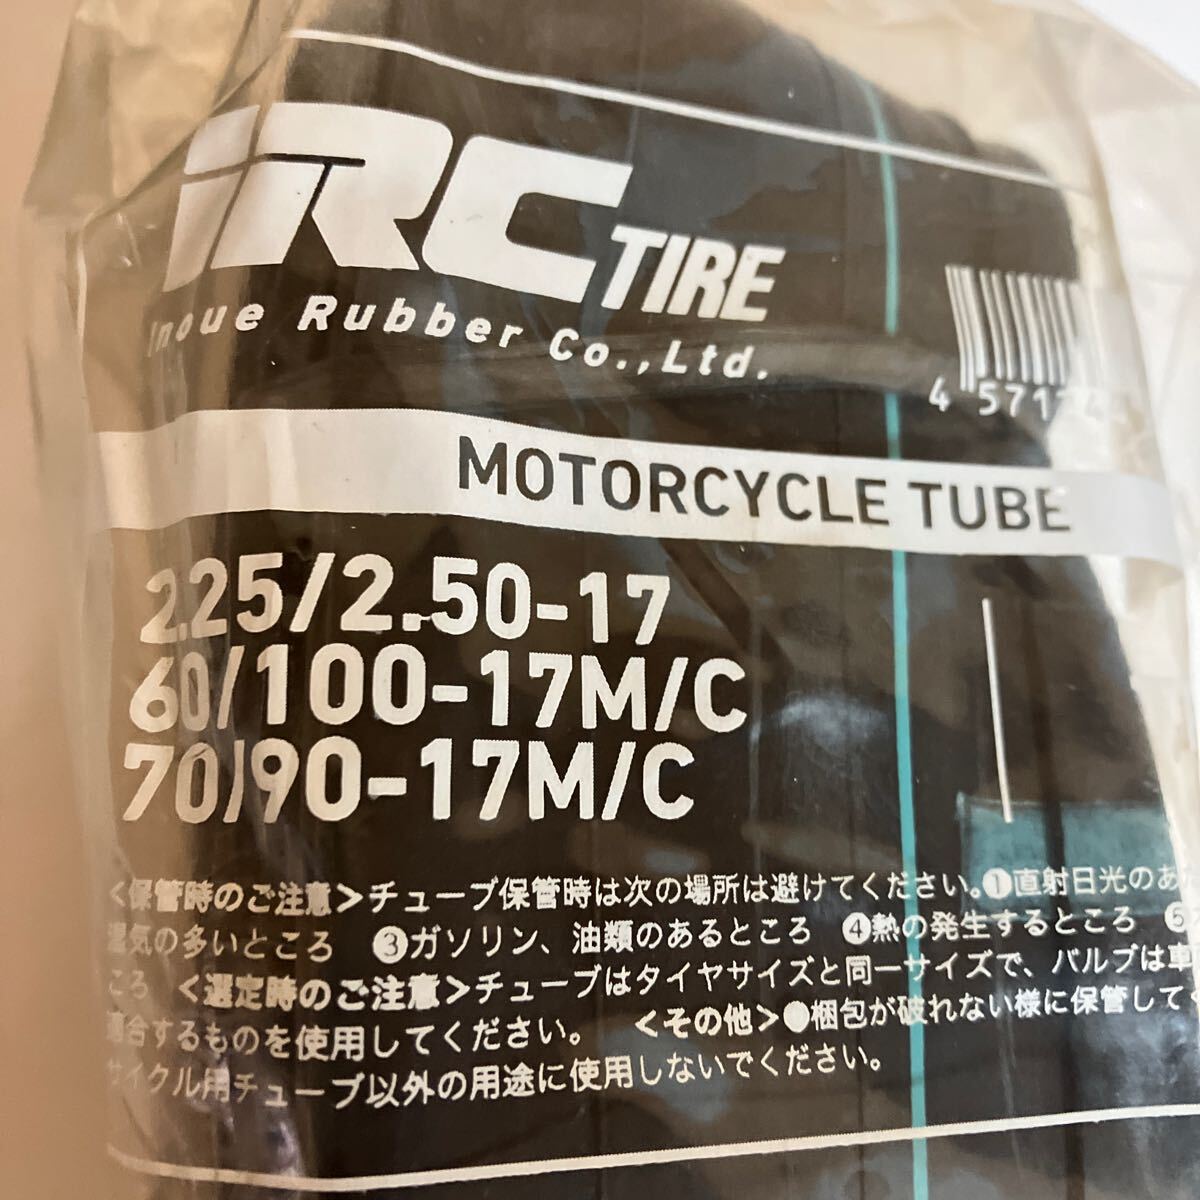 【未使用】IRC スーパーカブ バイク用 タイヤチューブ 2本セット 2.25/2.50-17 60/100-17M/C 70/90-17M/C TR-4 菅F-9の画像3